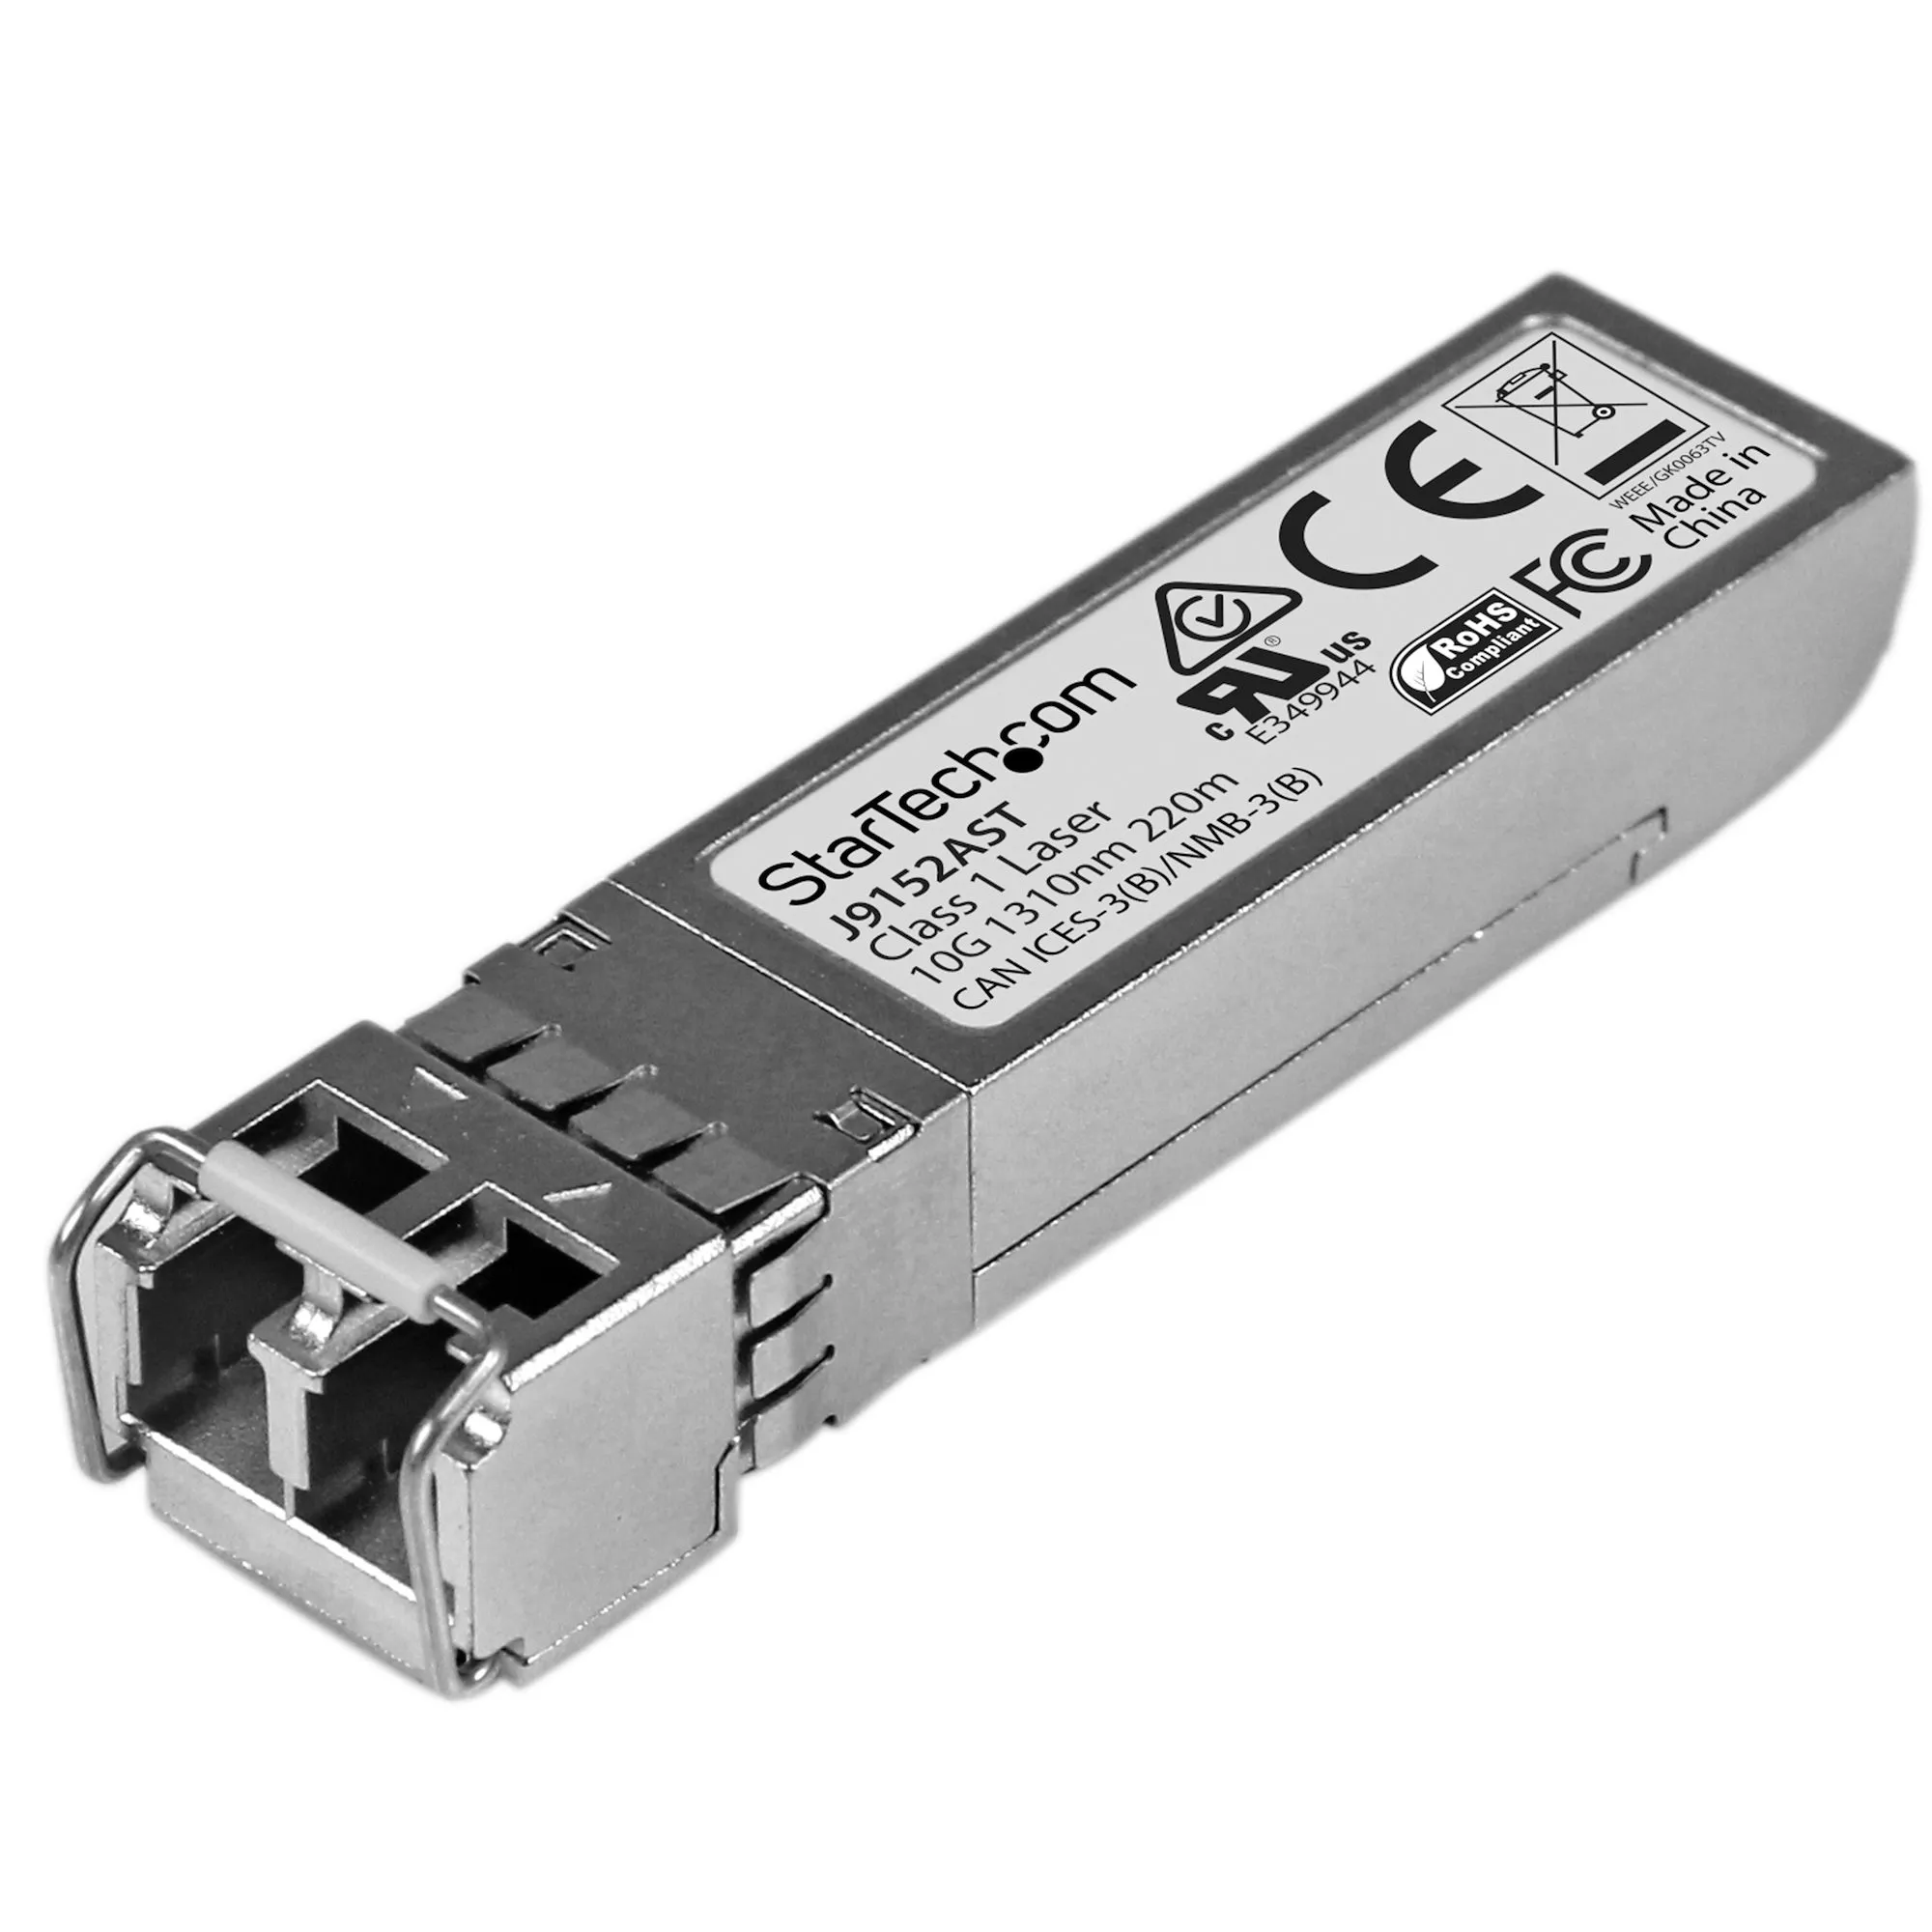 Achat StarTech.com Module SFP+ GBIC compatible HPE J9152A au meilleur prix